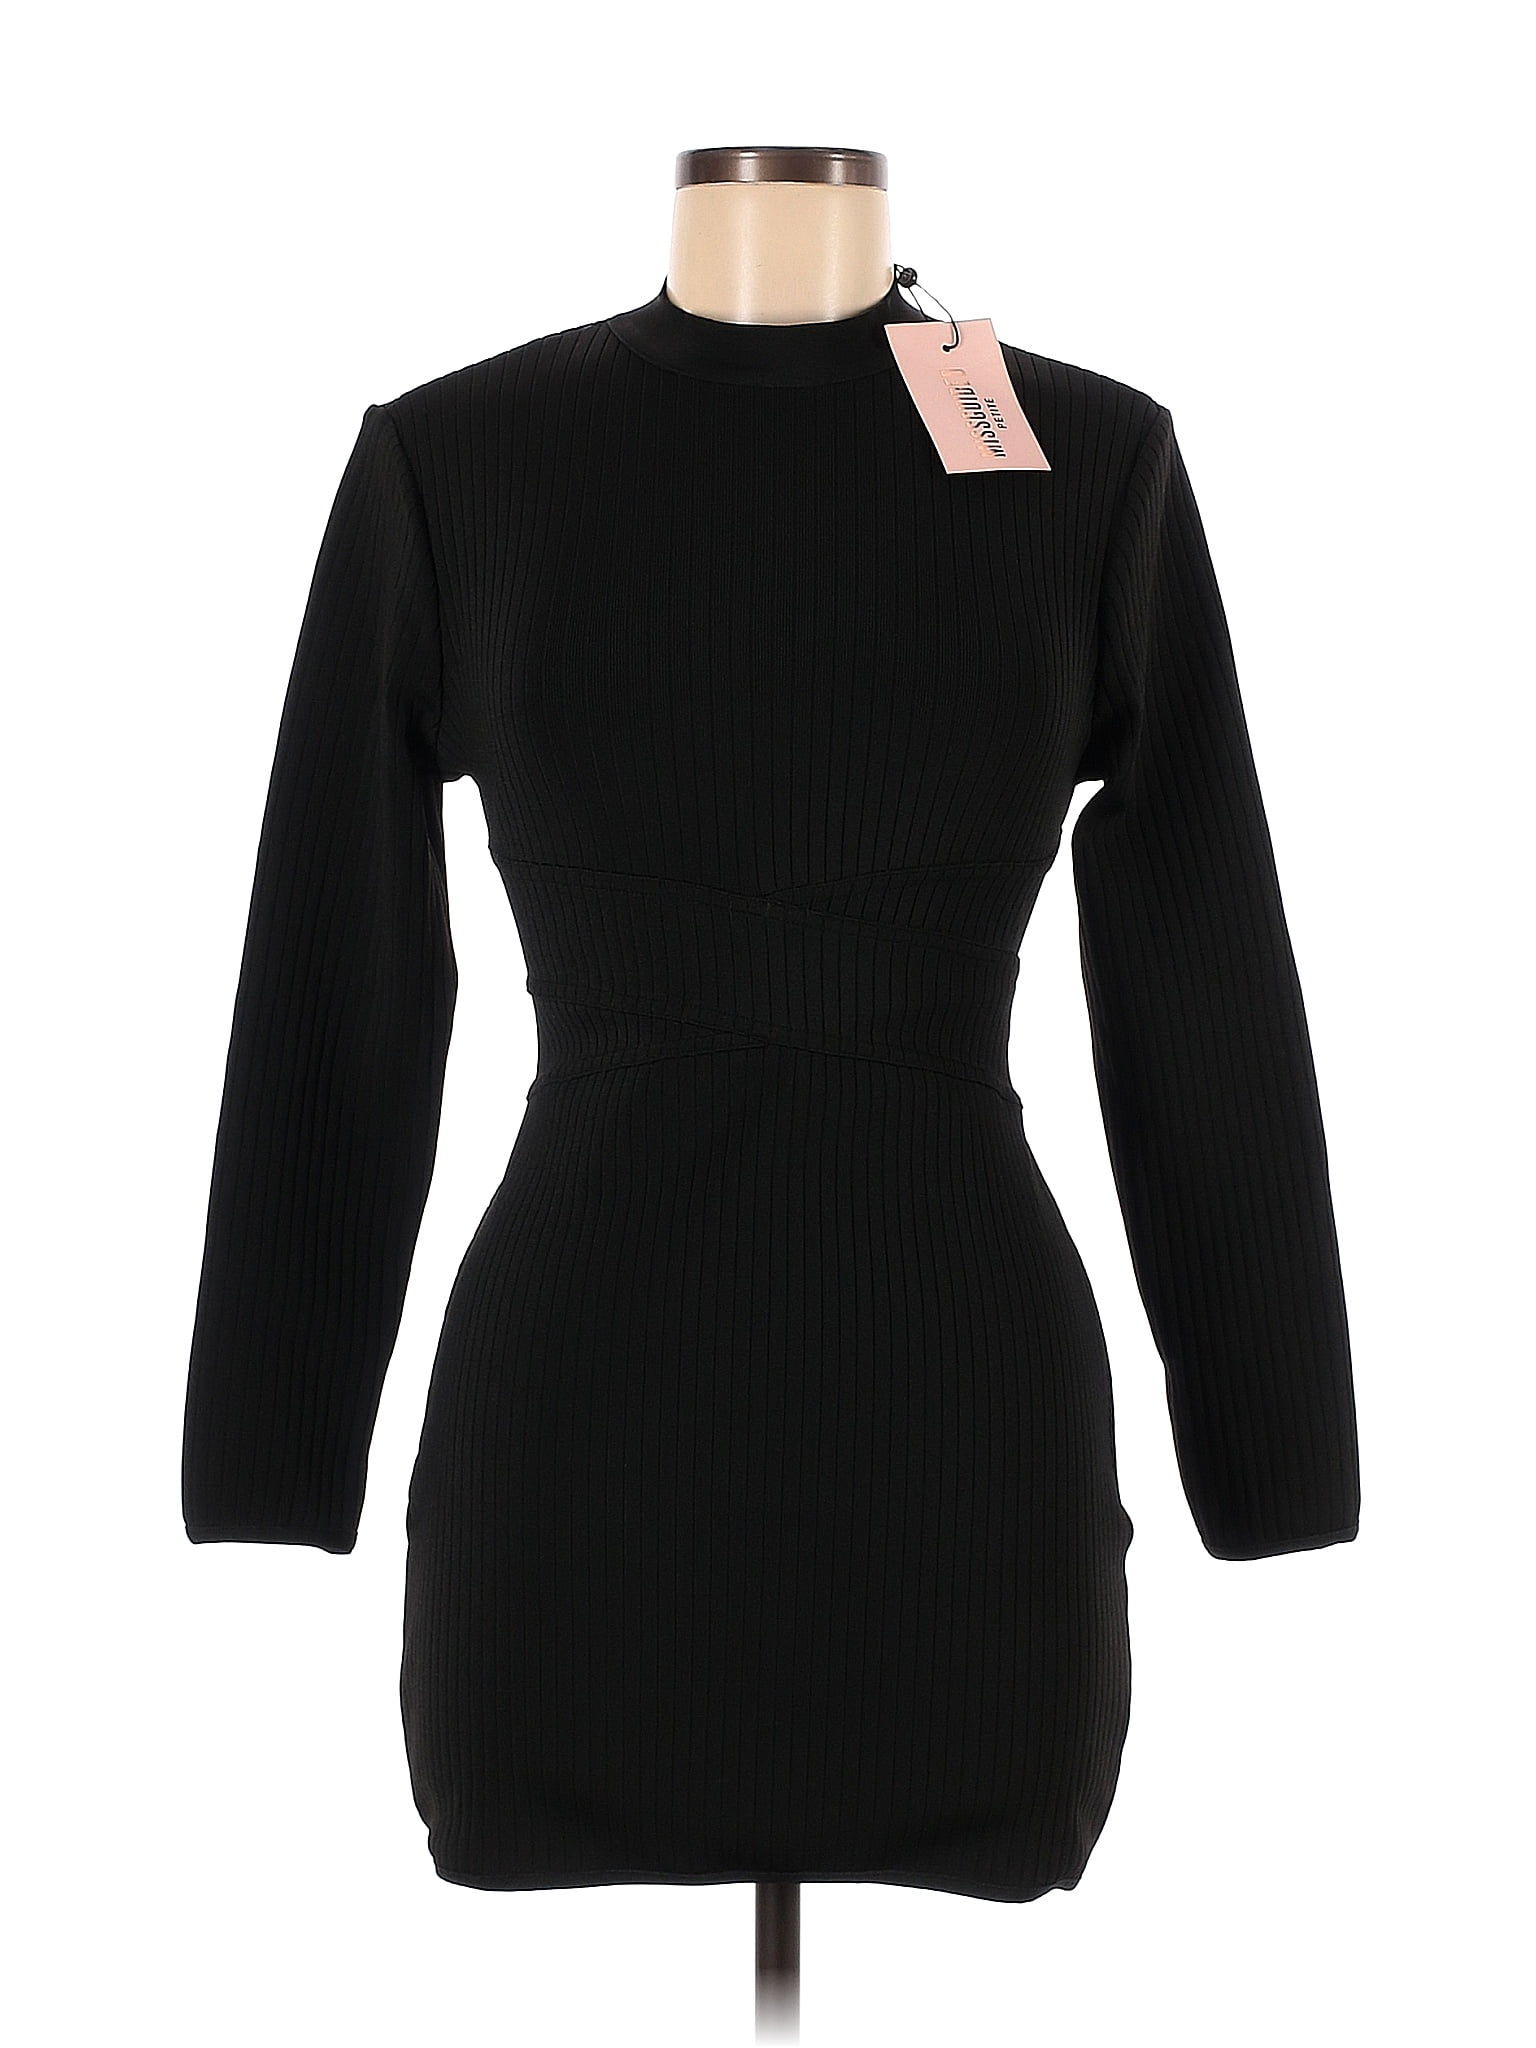 Allegra K Women's Short Sleeve Square Neck Knitted Bodysuit Leotard Tops  Black Medium : Target